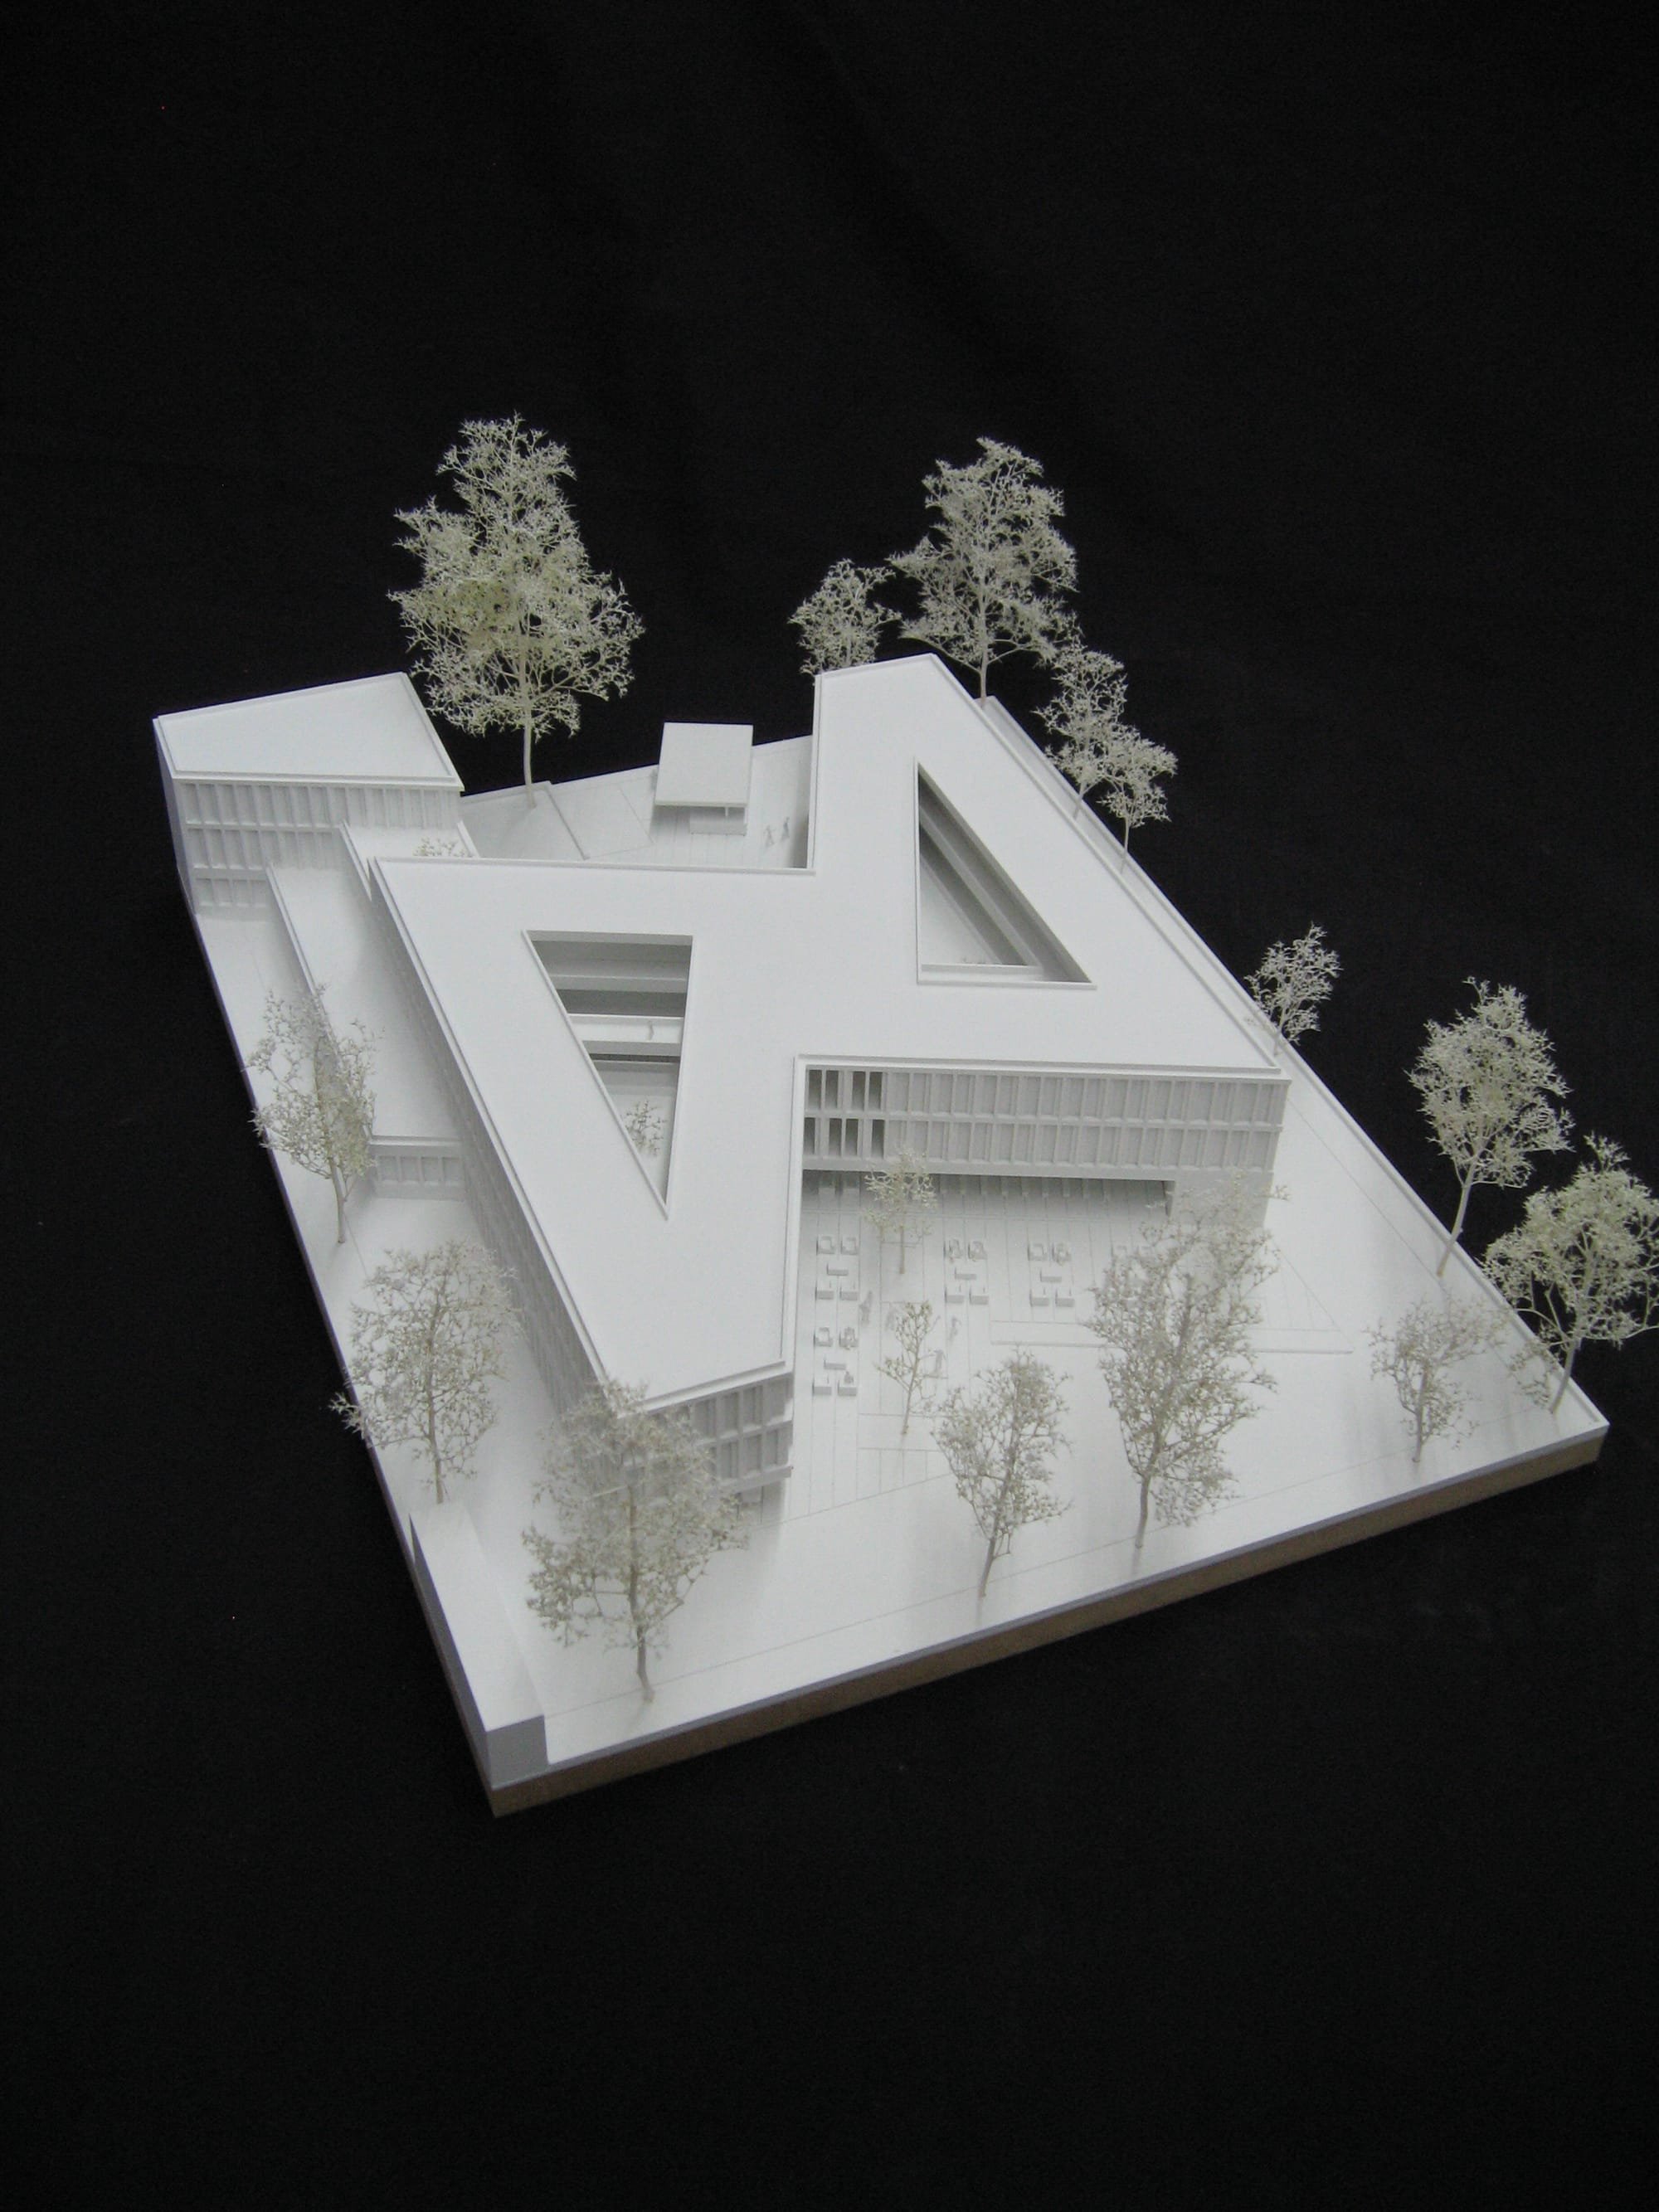 In Zusammenarbeit mit Architekturmodellbau Thomas Guske